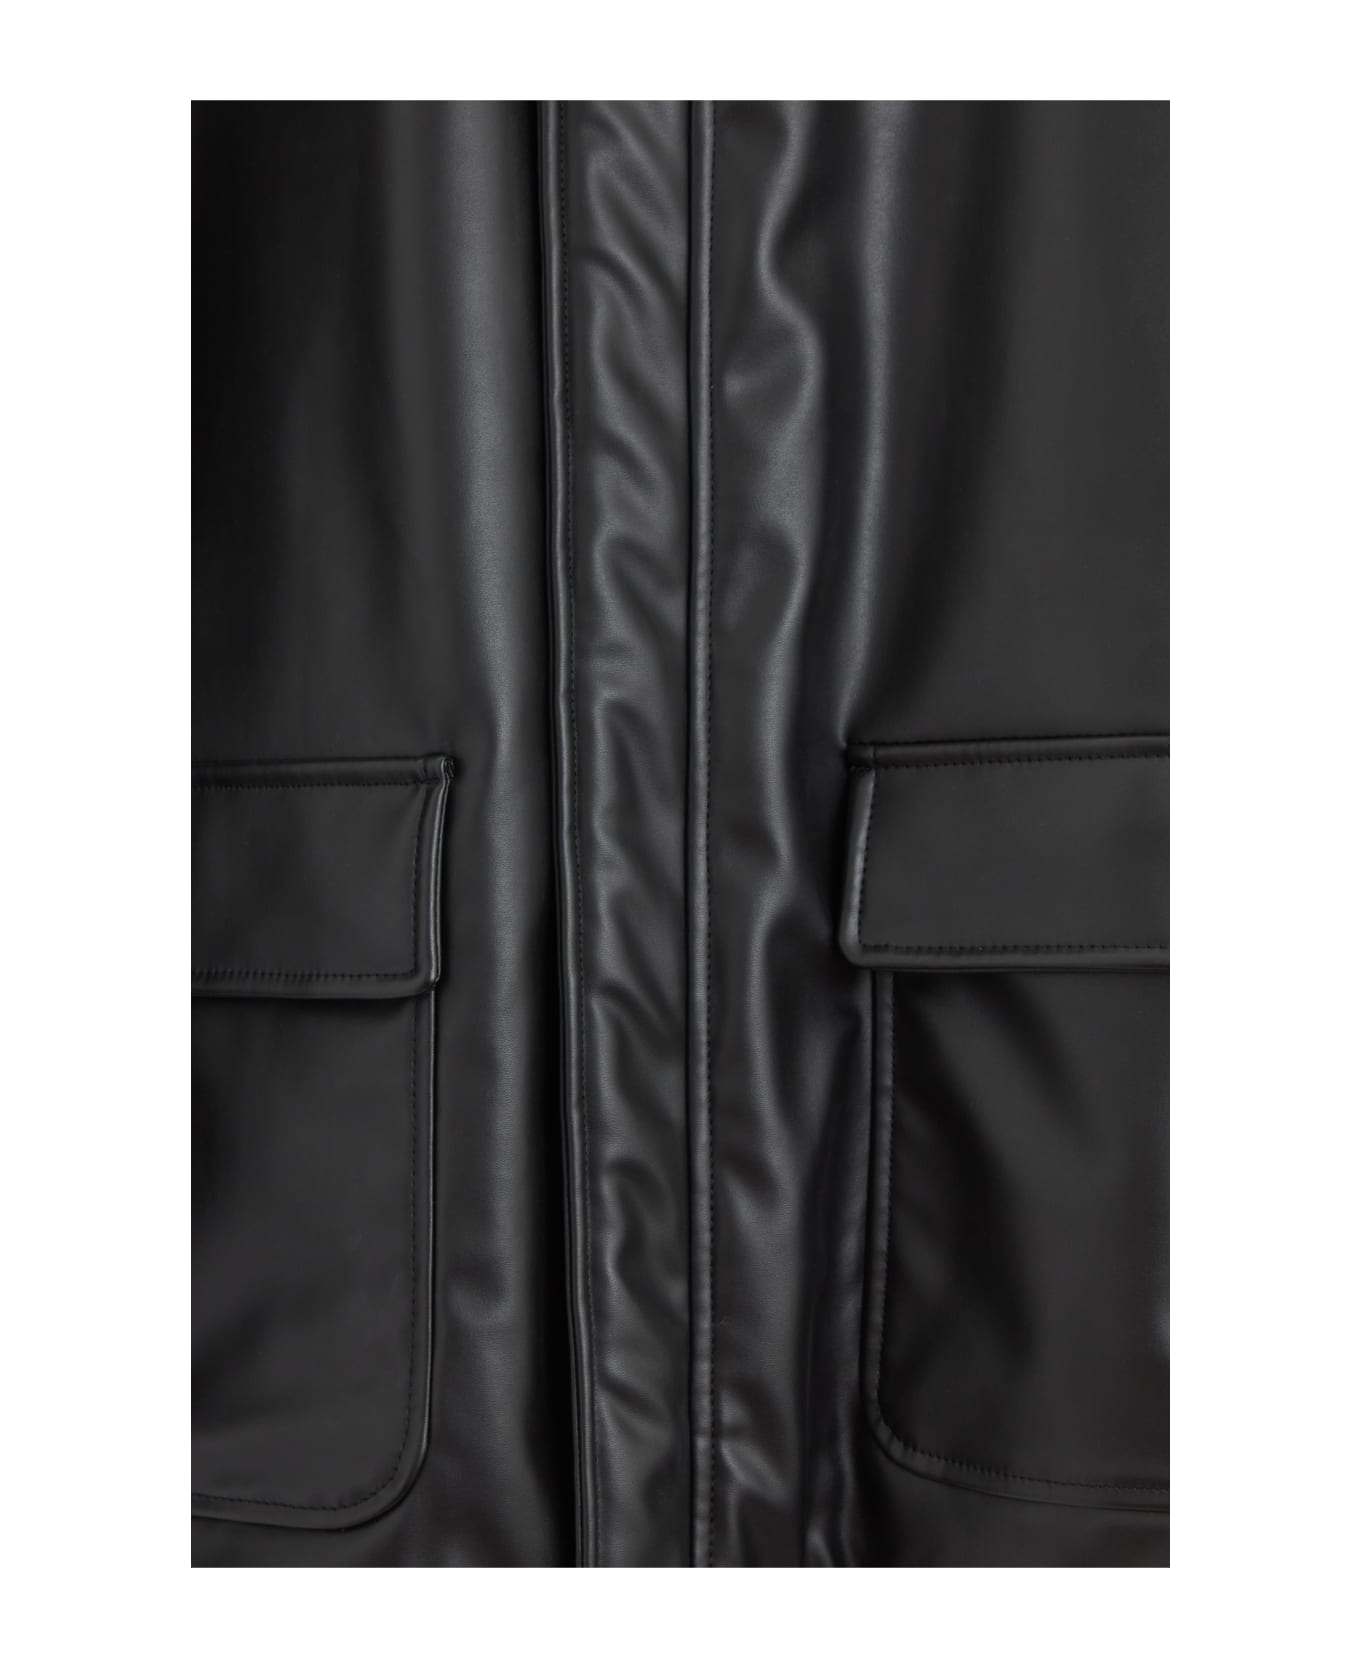 MM6 Maison Margiela Leather Car-coat - black